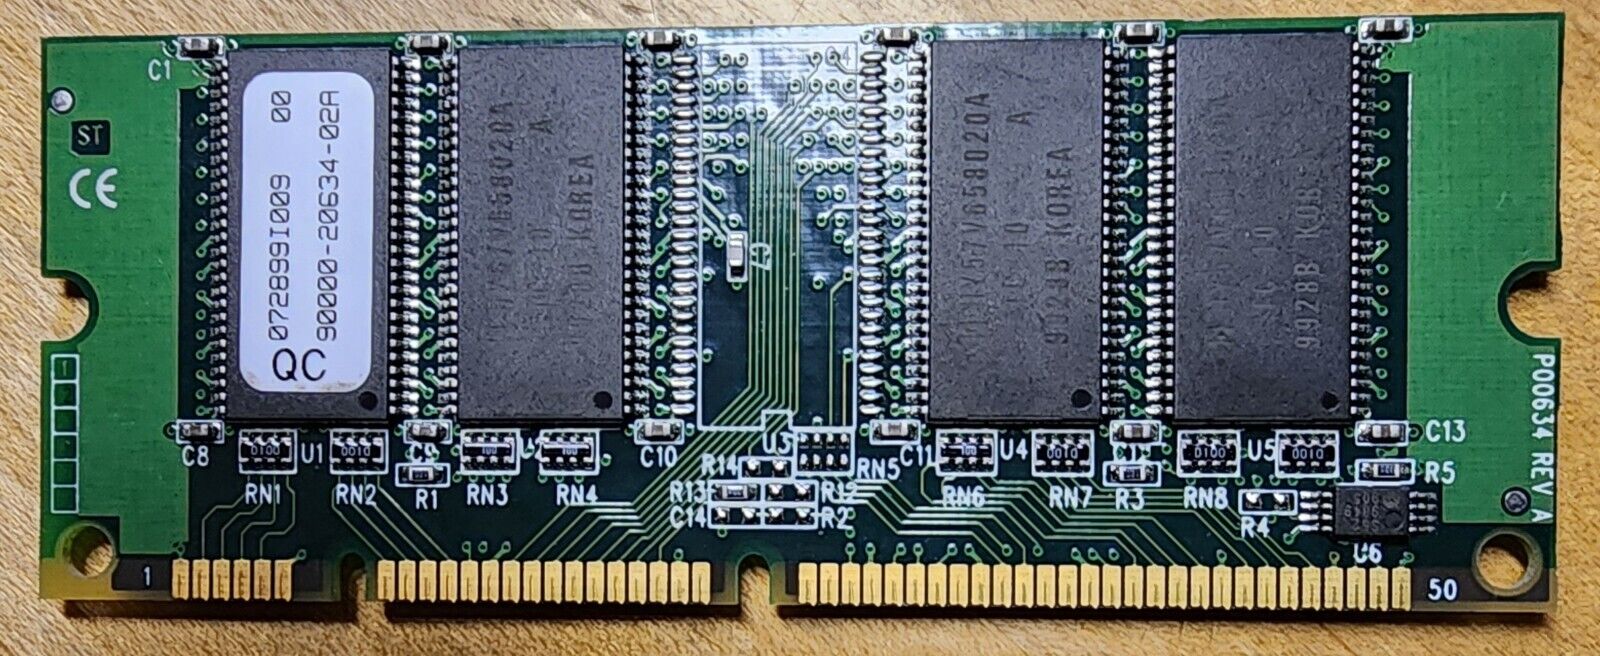 Hyundai Electronics HY57V658020A 64MB SDRAM PC100